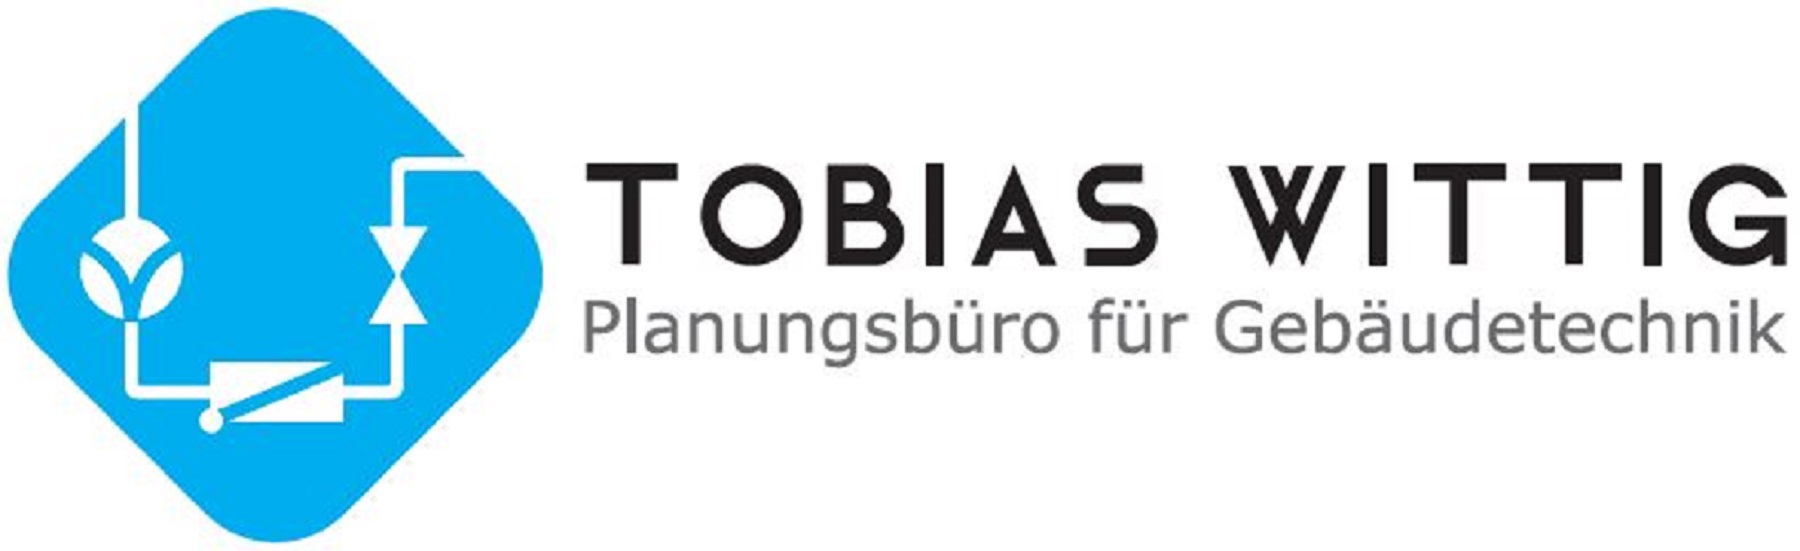 Tobias Wittig Planungsbüro für Gebäudetechnik Heizung, Lüftung, Klima und Sanitäranlagen